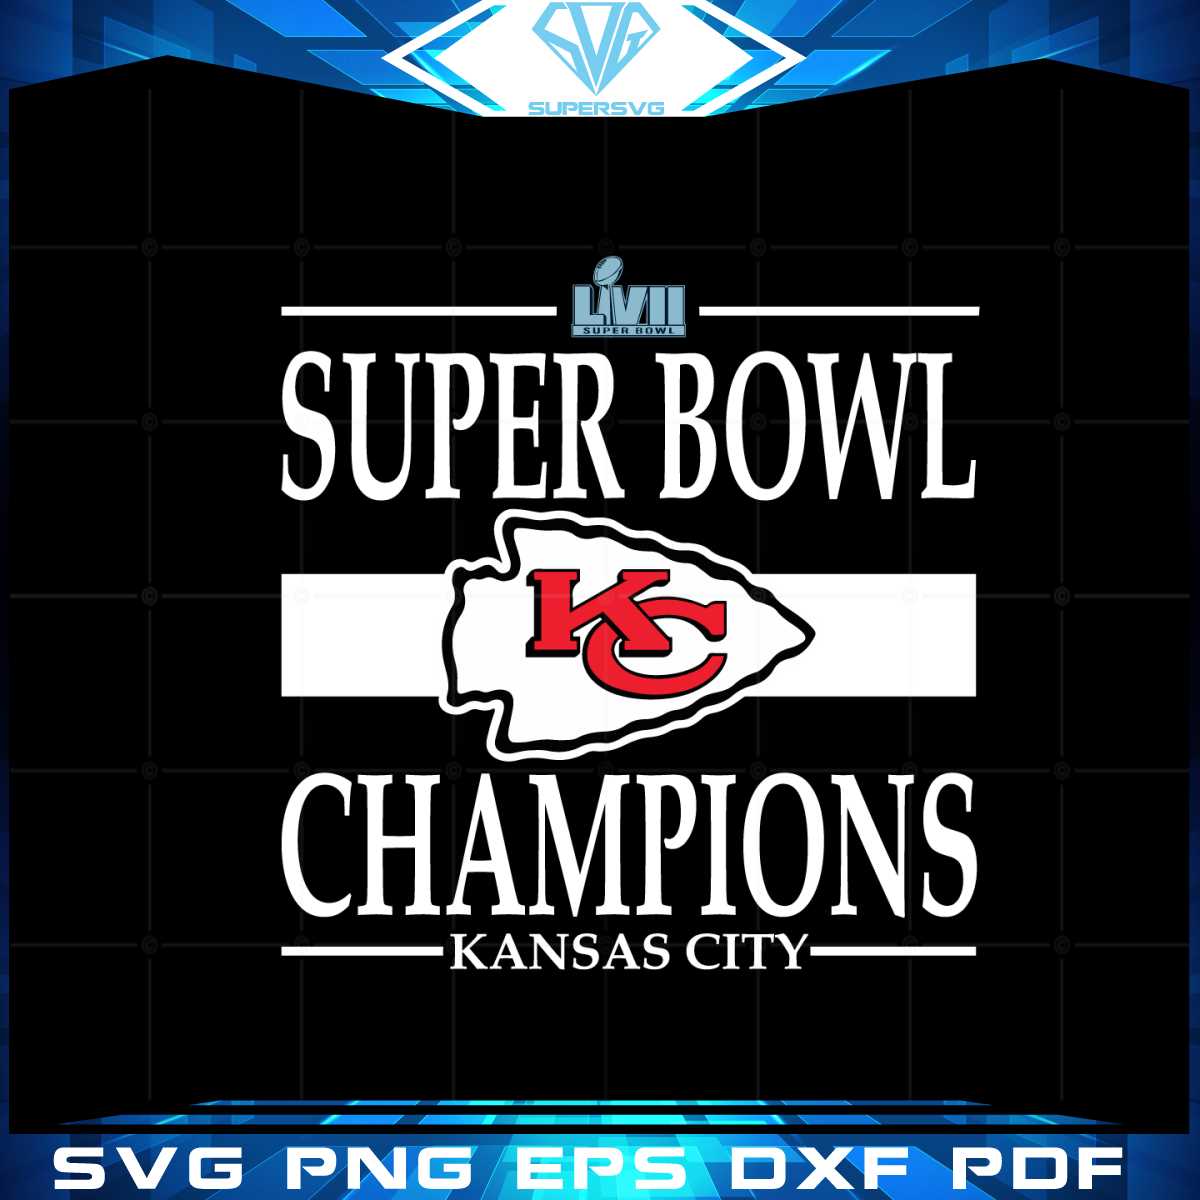 Kansas City Chiefs Super Bowl Lvii Champions Kc Chiefs Fans Svg